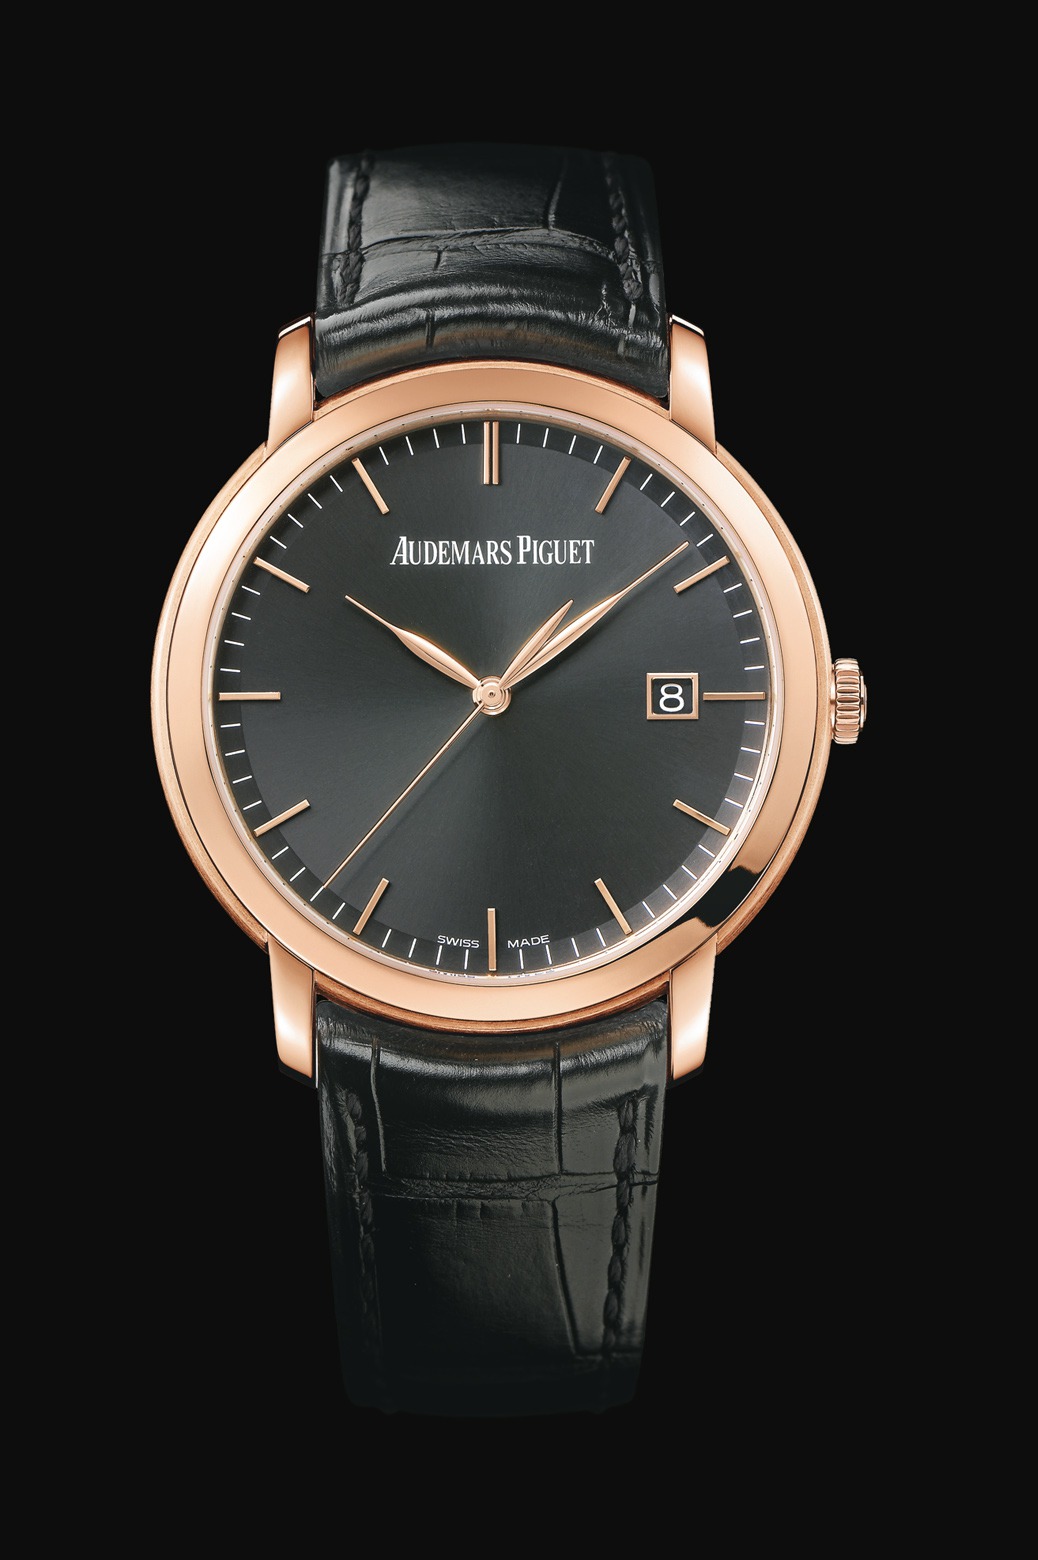 Audemars Piguet Jules Audemars Automatic Pink Gold watch REF: 15170OR.OO.A002CR.01